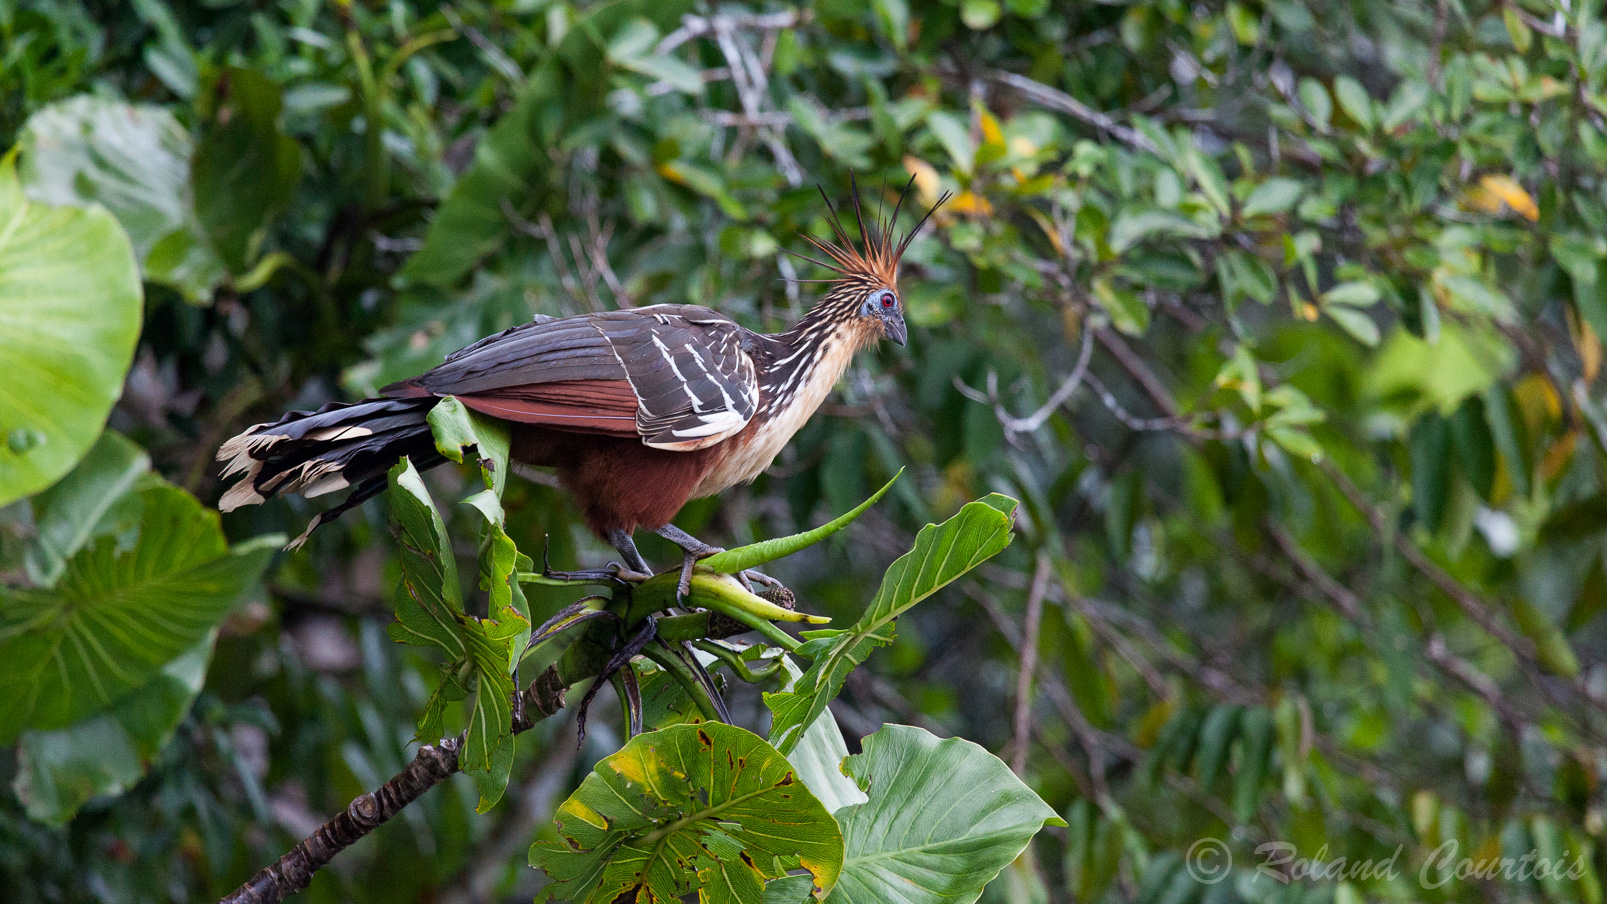 Opisthocomus hoazin - Hoatzin, oiseau préhistorique d'un comportement assez bizarre.